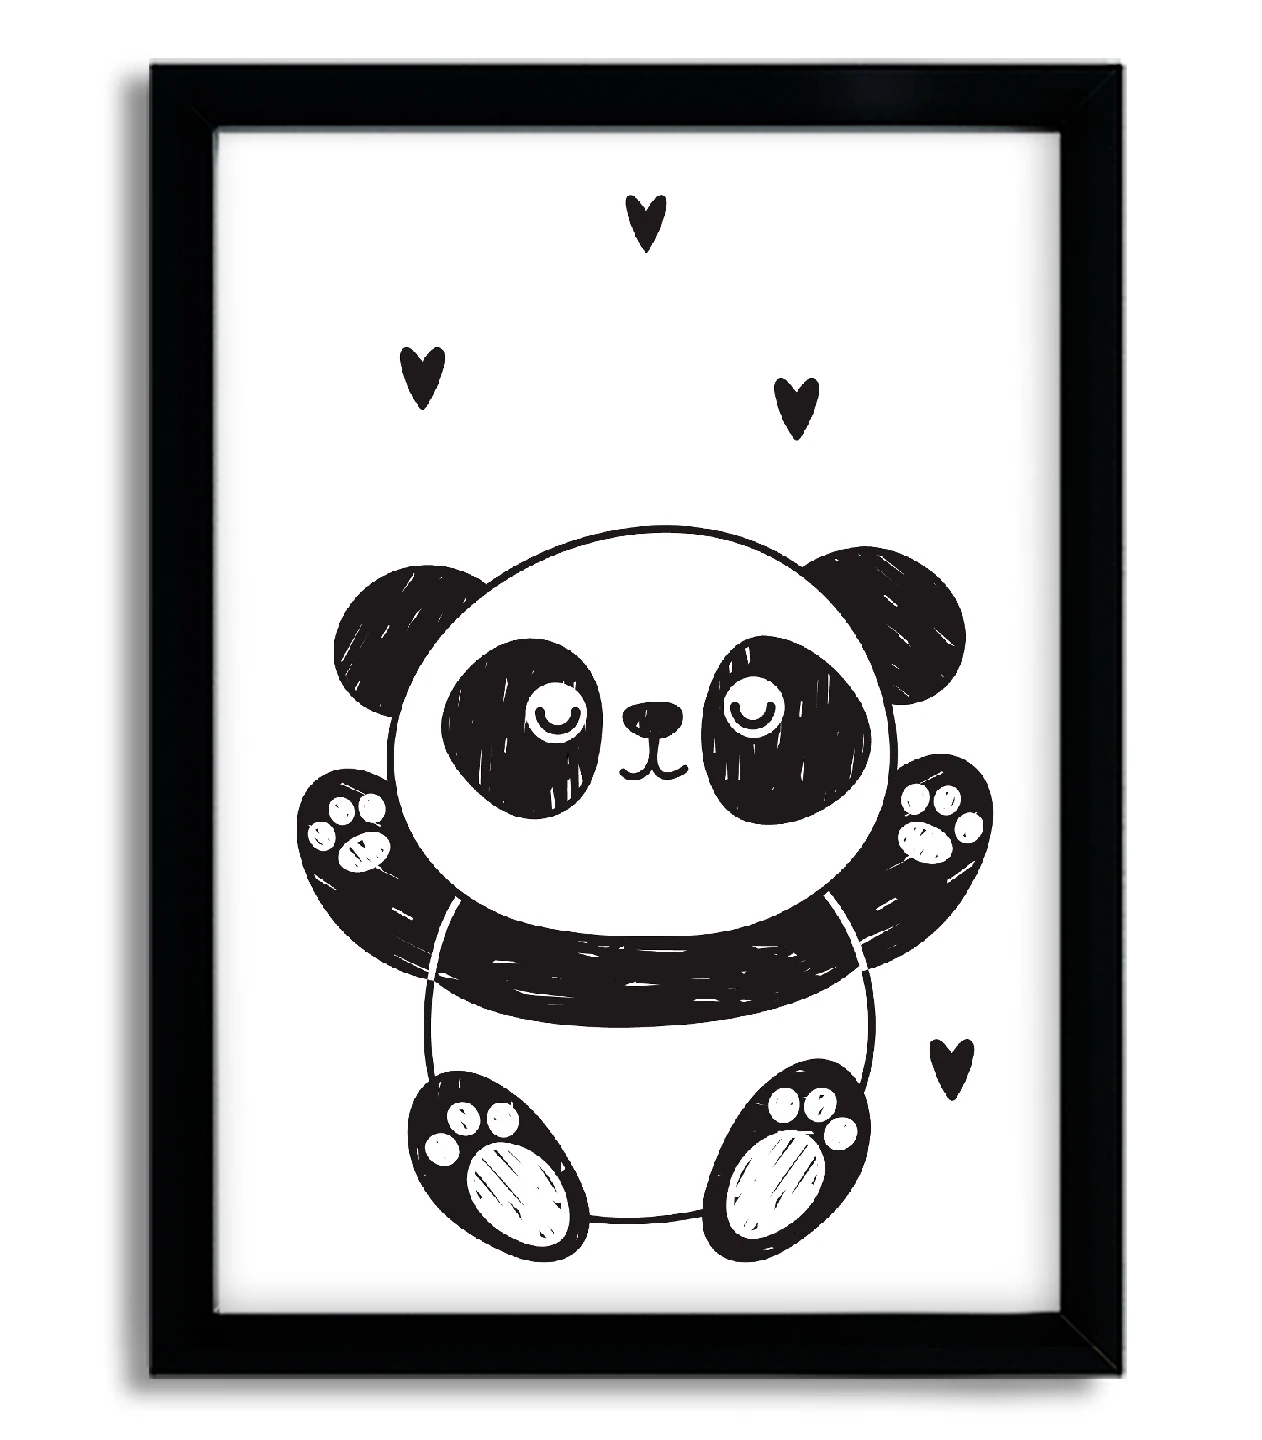 Quadro Decorativo Infantil Ursinho Panda com Flores SKU: 4177G